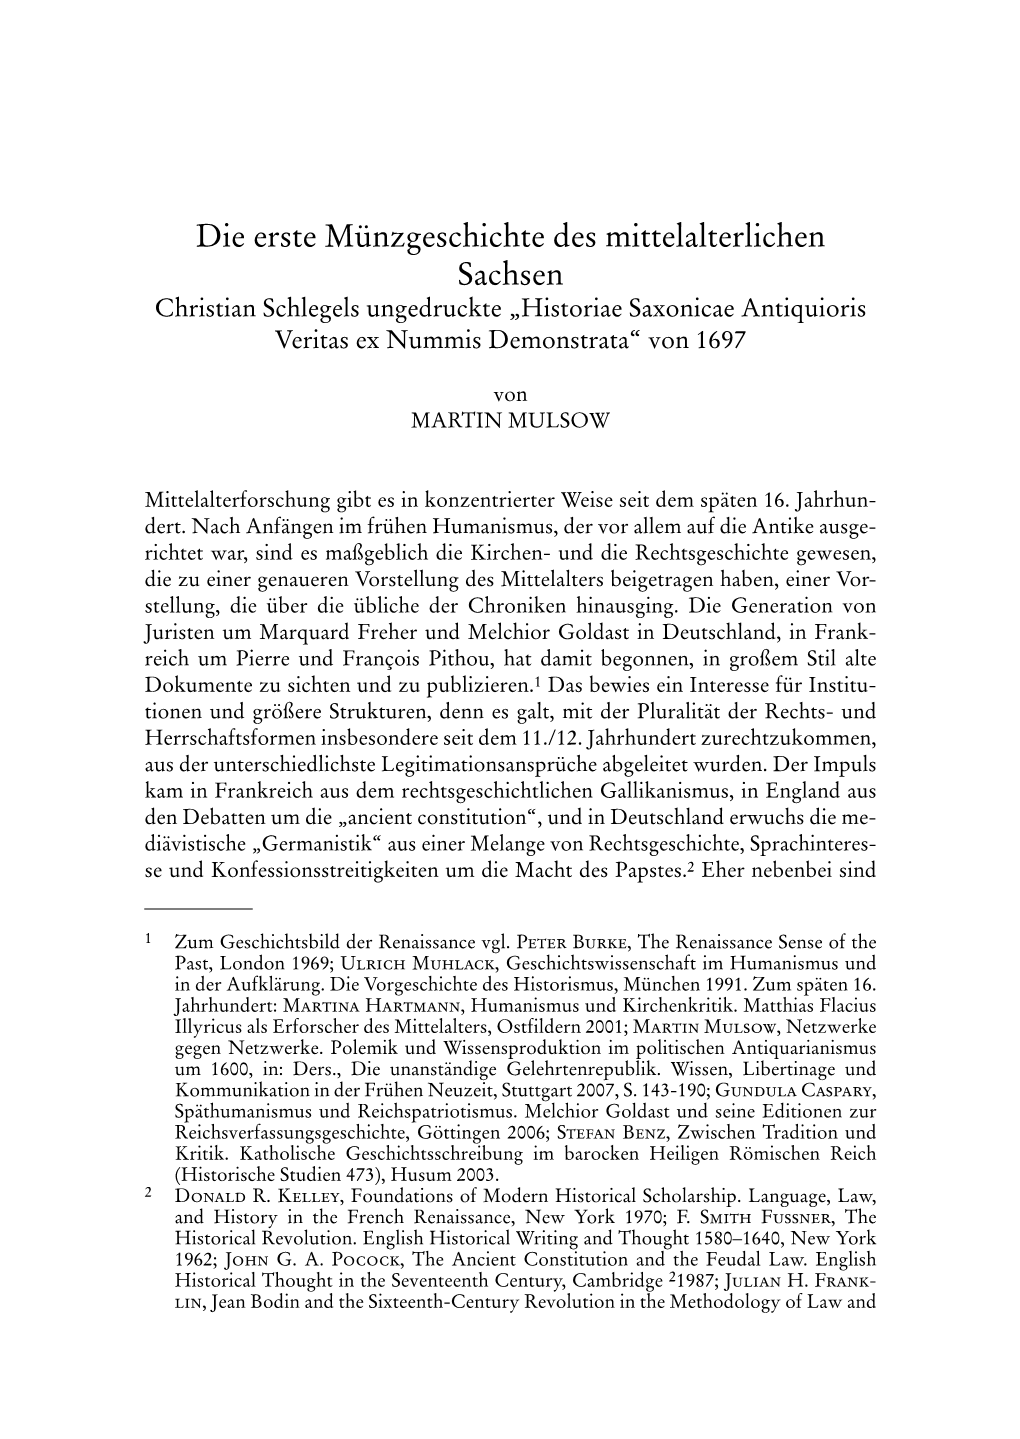 Neues Archiv Für Sächsische Geschichte 1 (1880), S